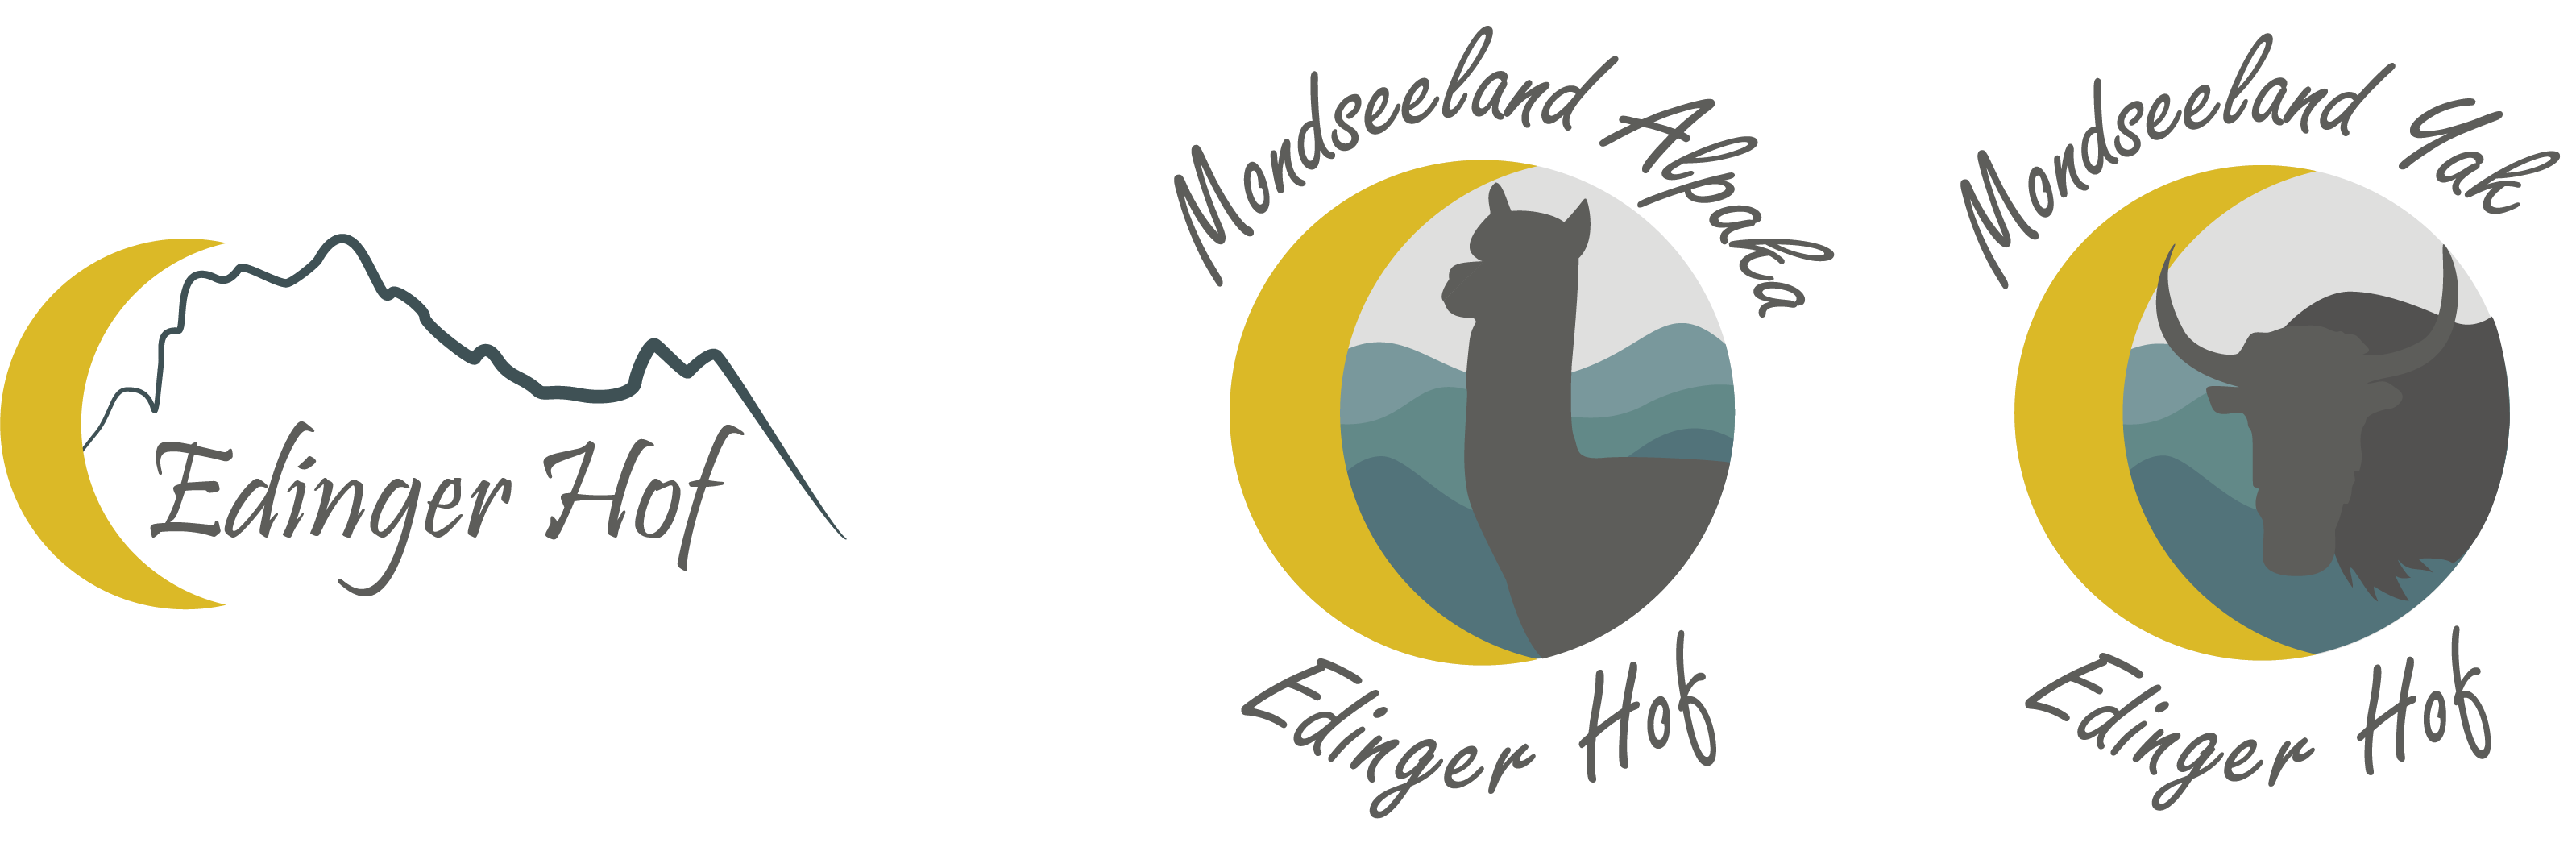 Edinger Hof Logos